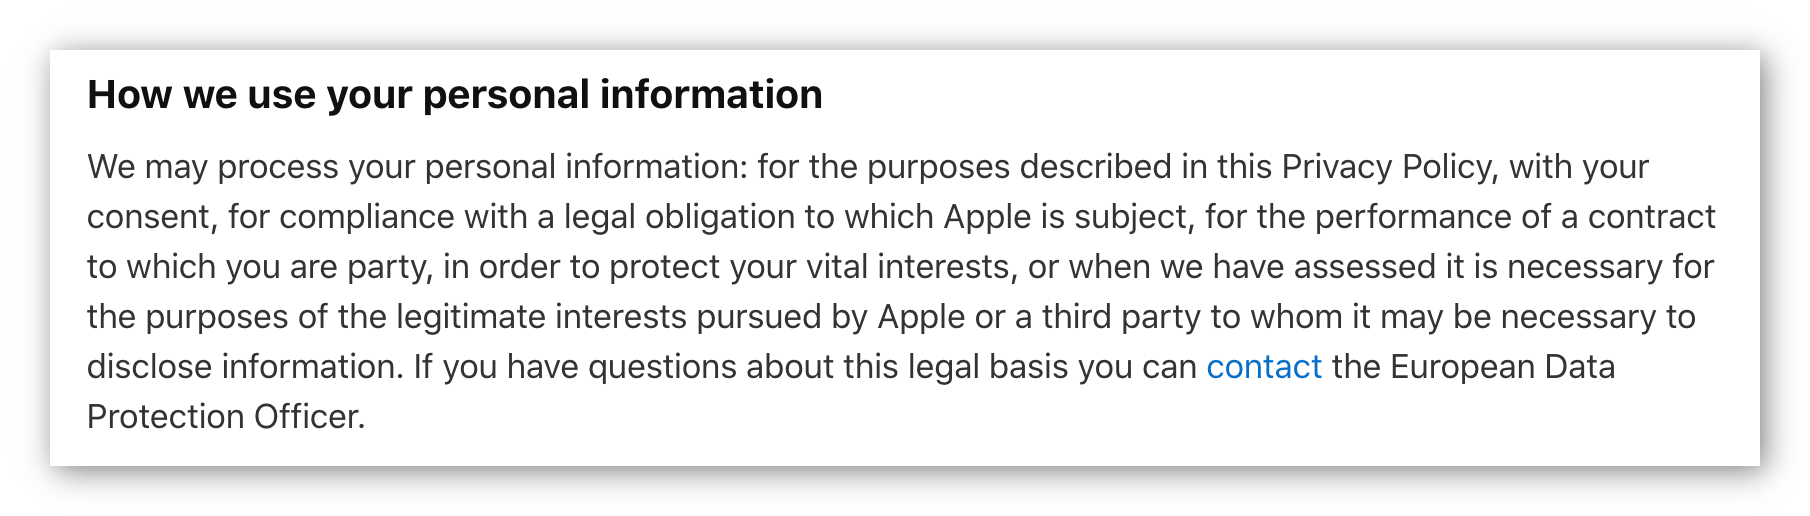 لقطة شاشة لسياسة خصوصية Apple